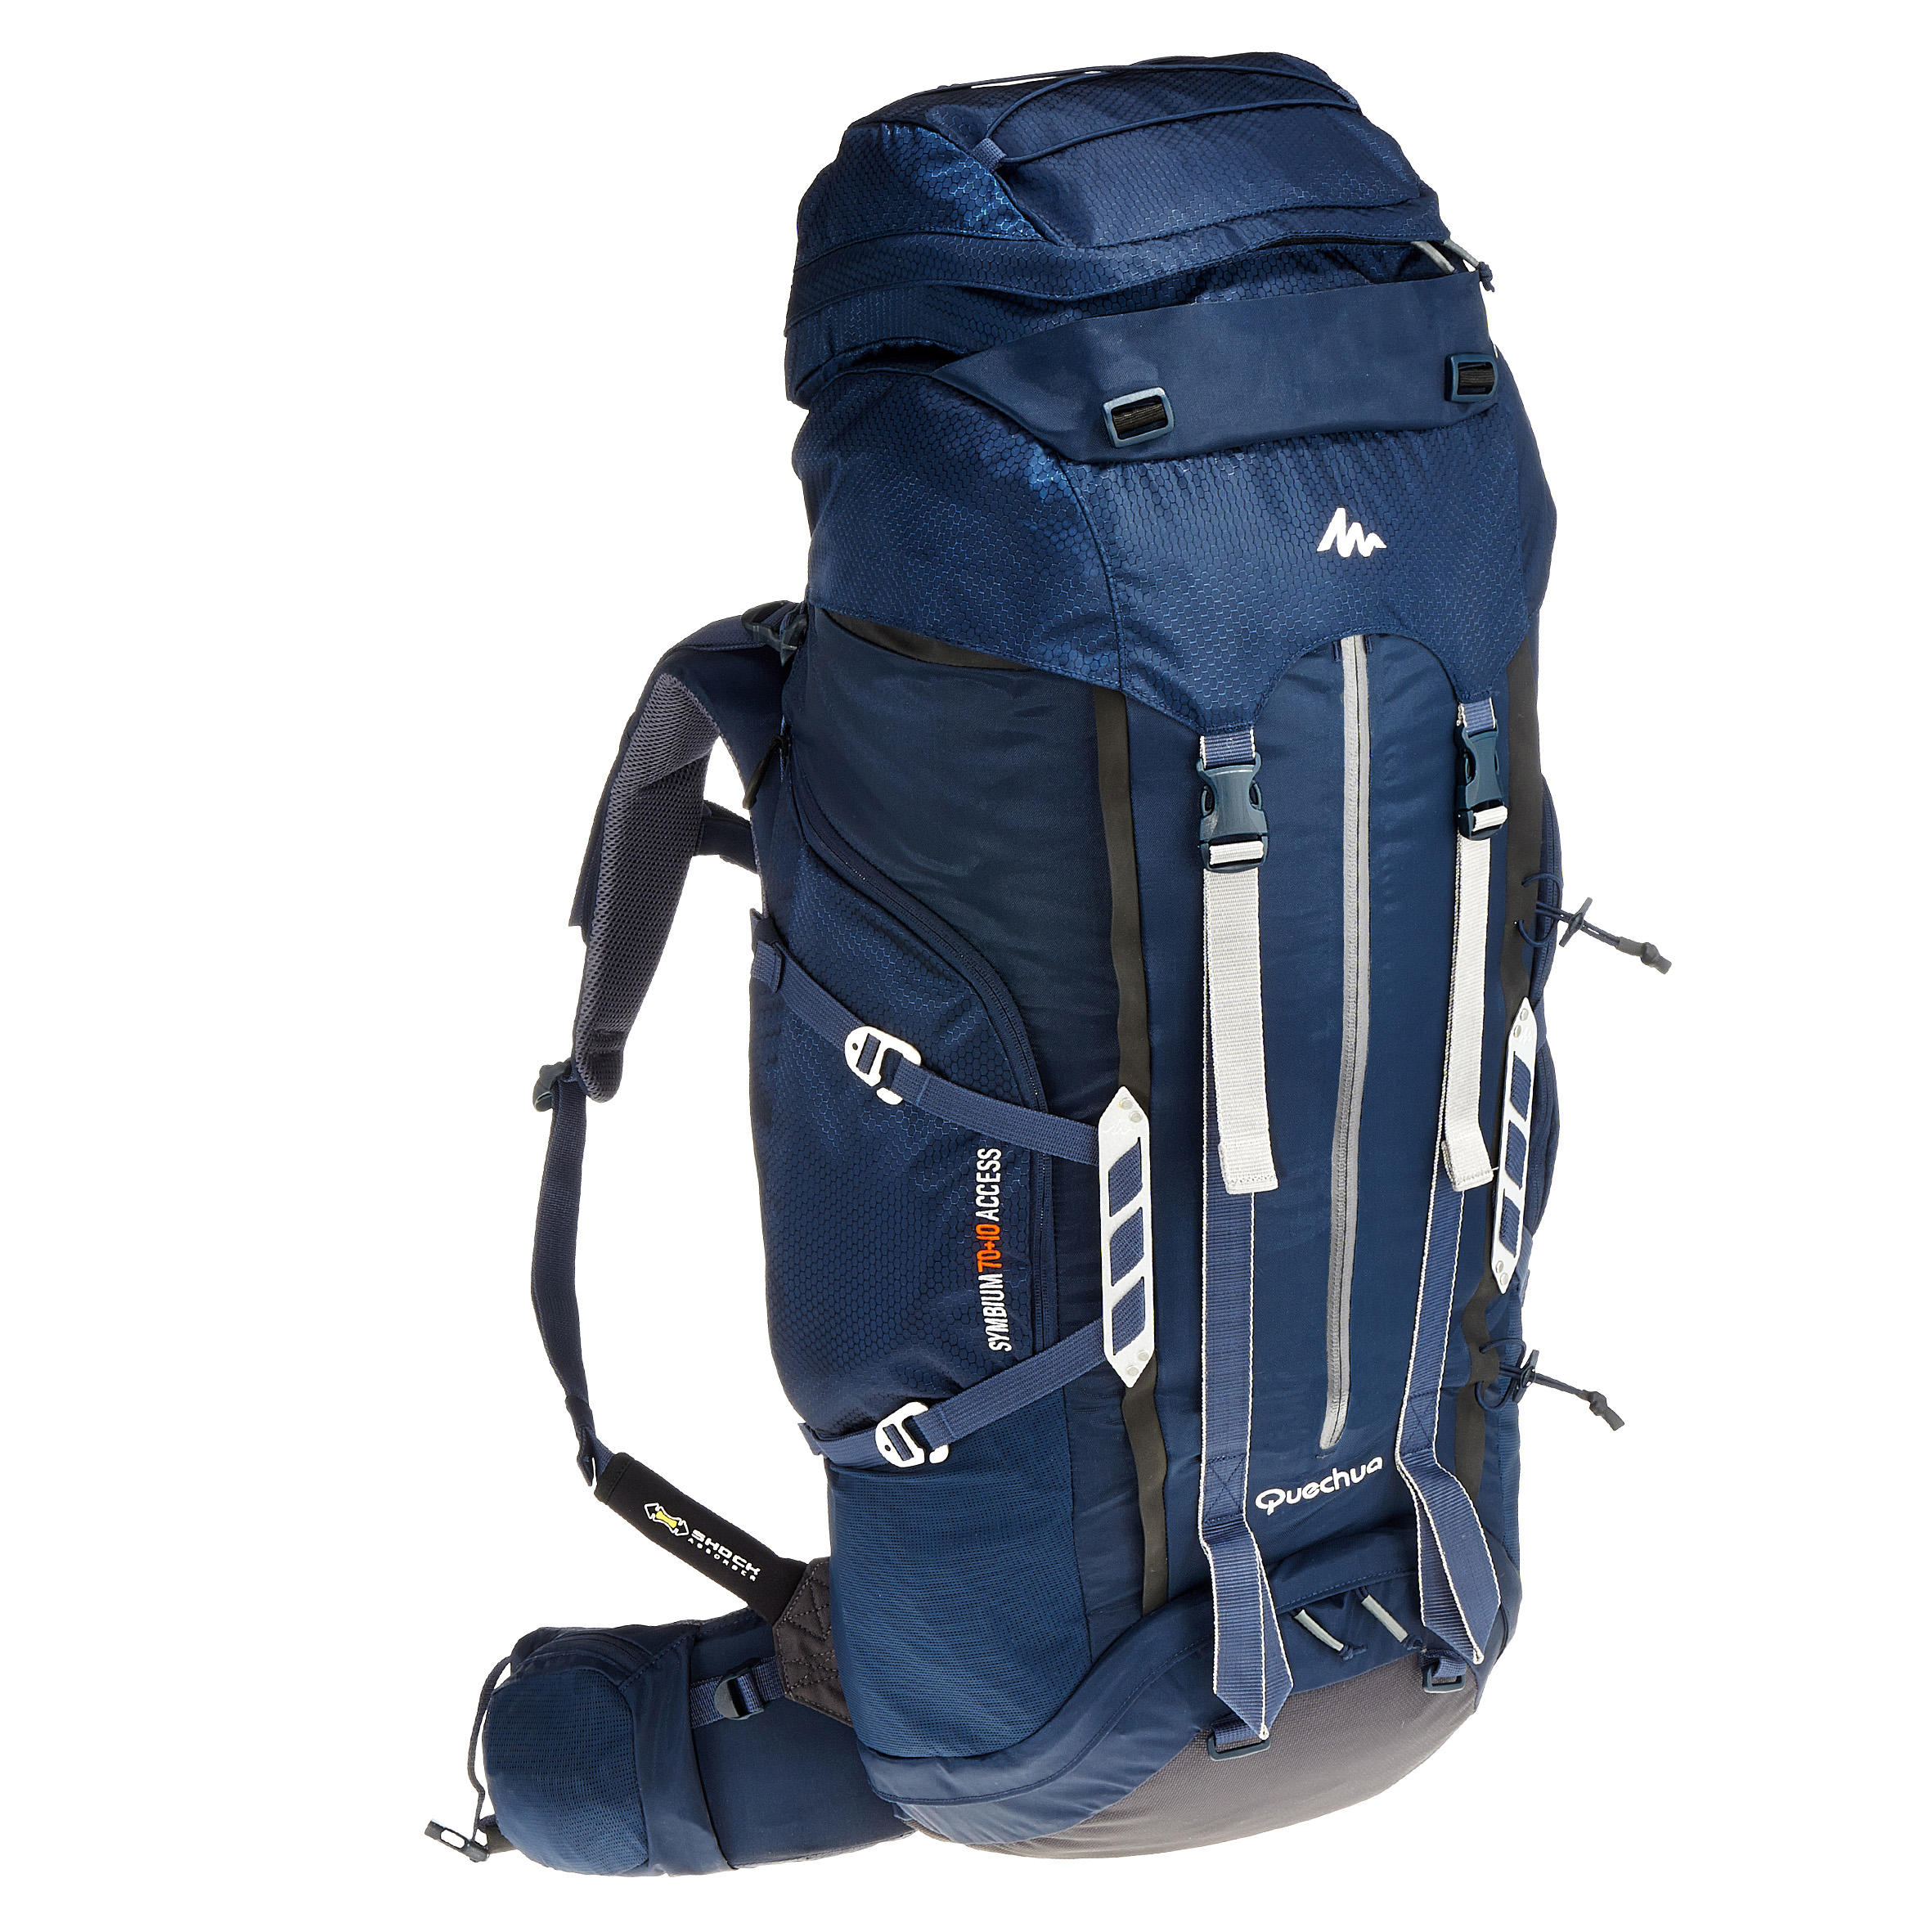 Trekking backpack 70+10 litres dark blue